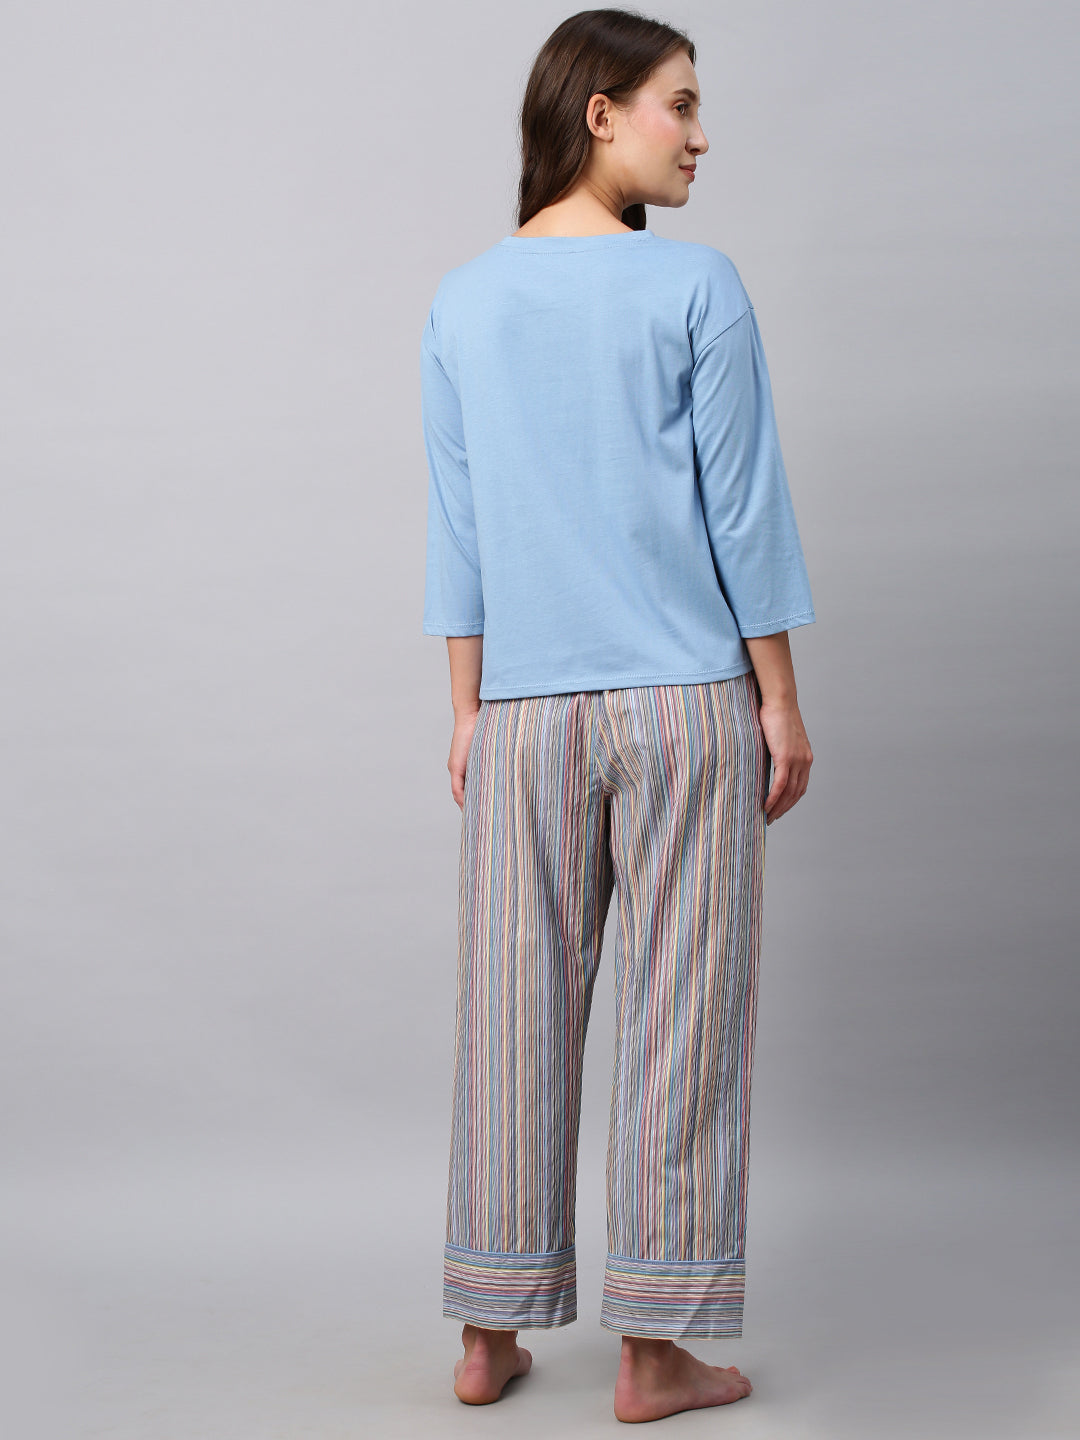 Cotton Jersey Tee W/ Multi Striped Pyjamas